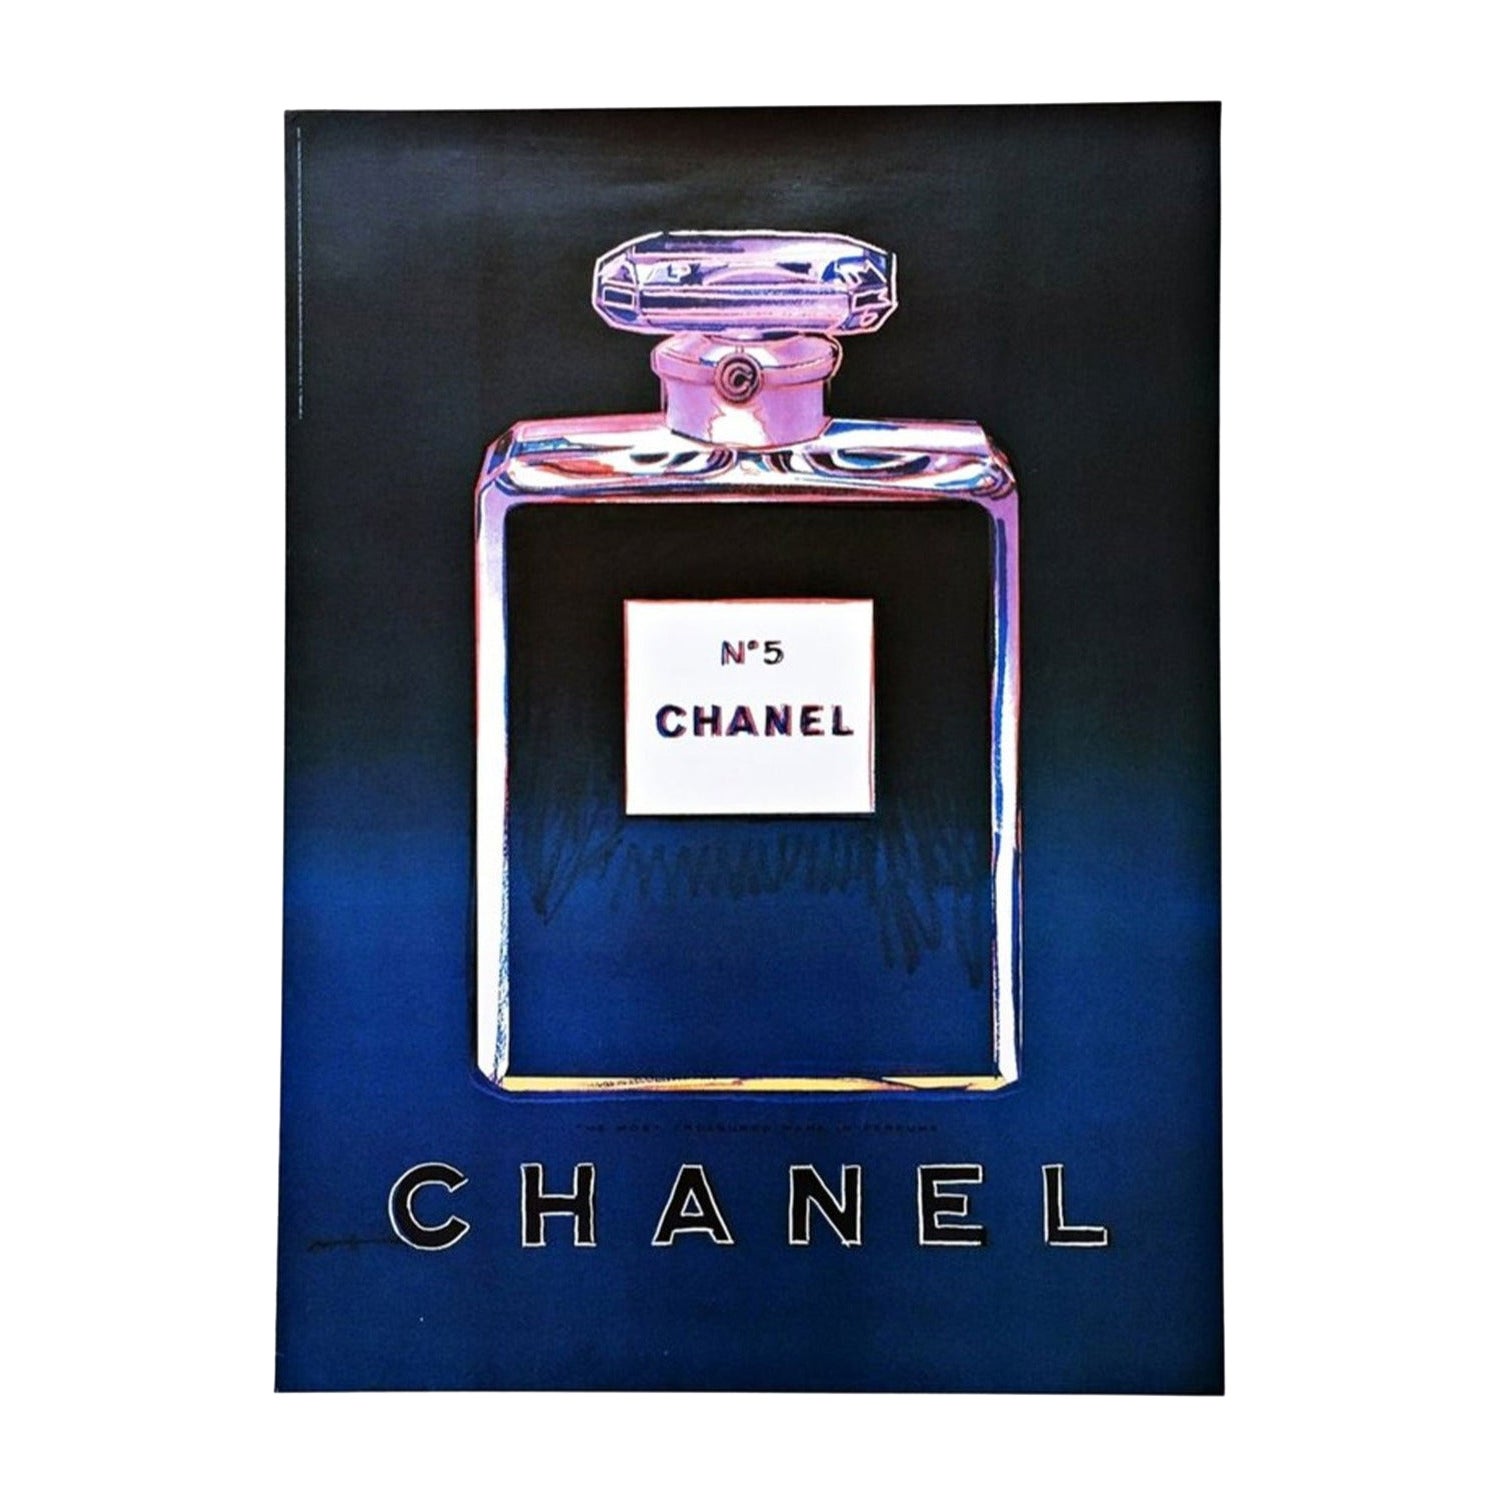 1997 Andy Warhol - Chanel Black Original Vintage Poster For Sale